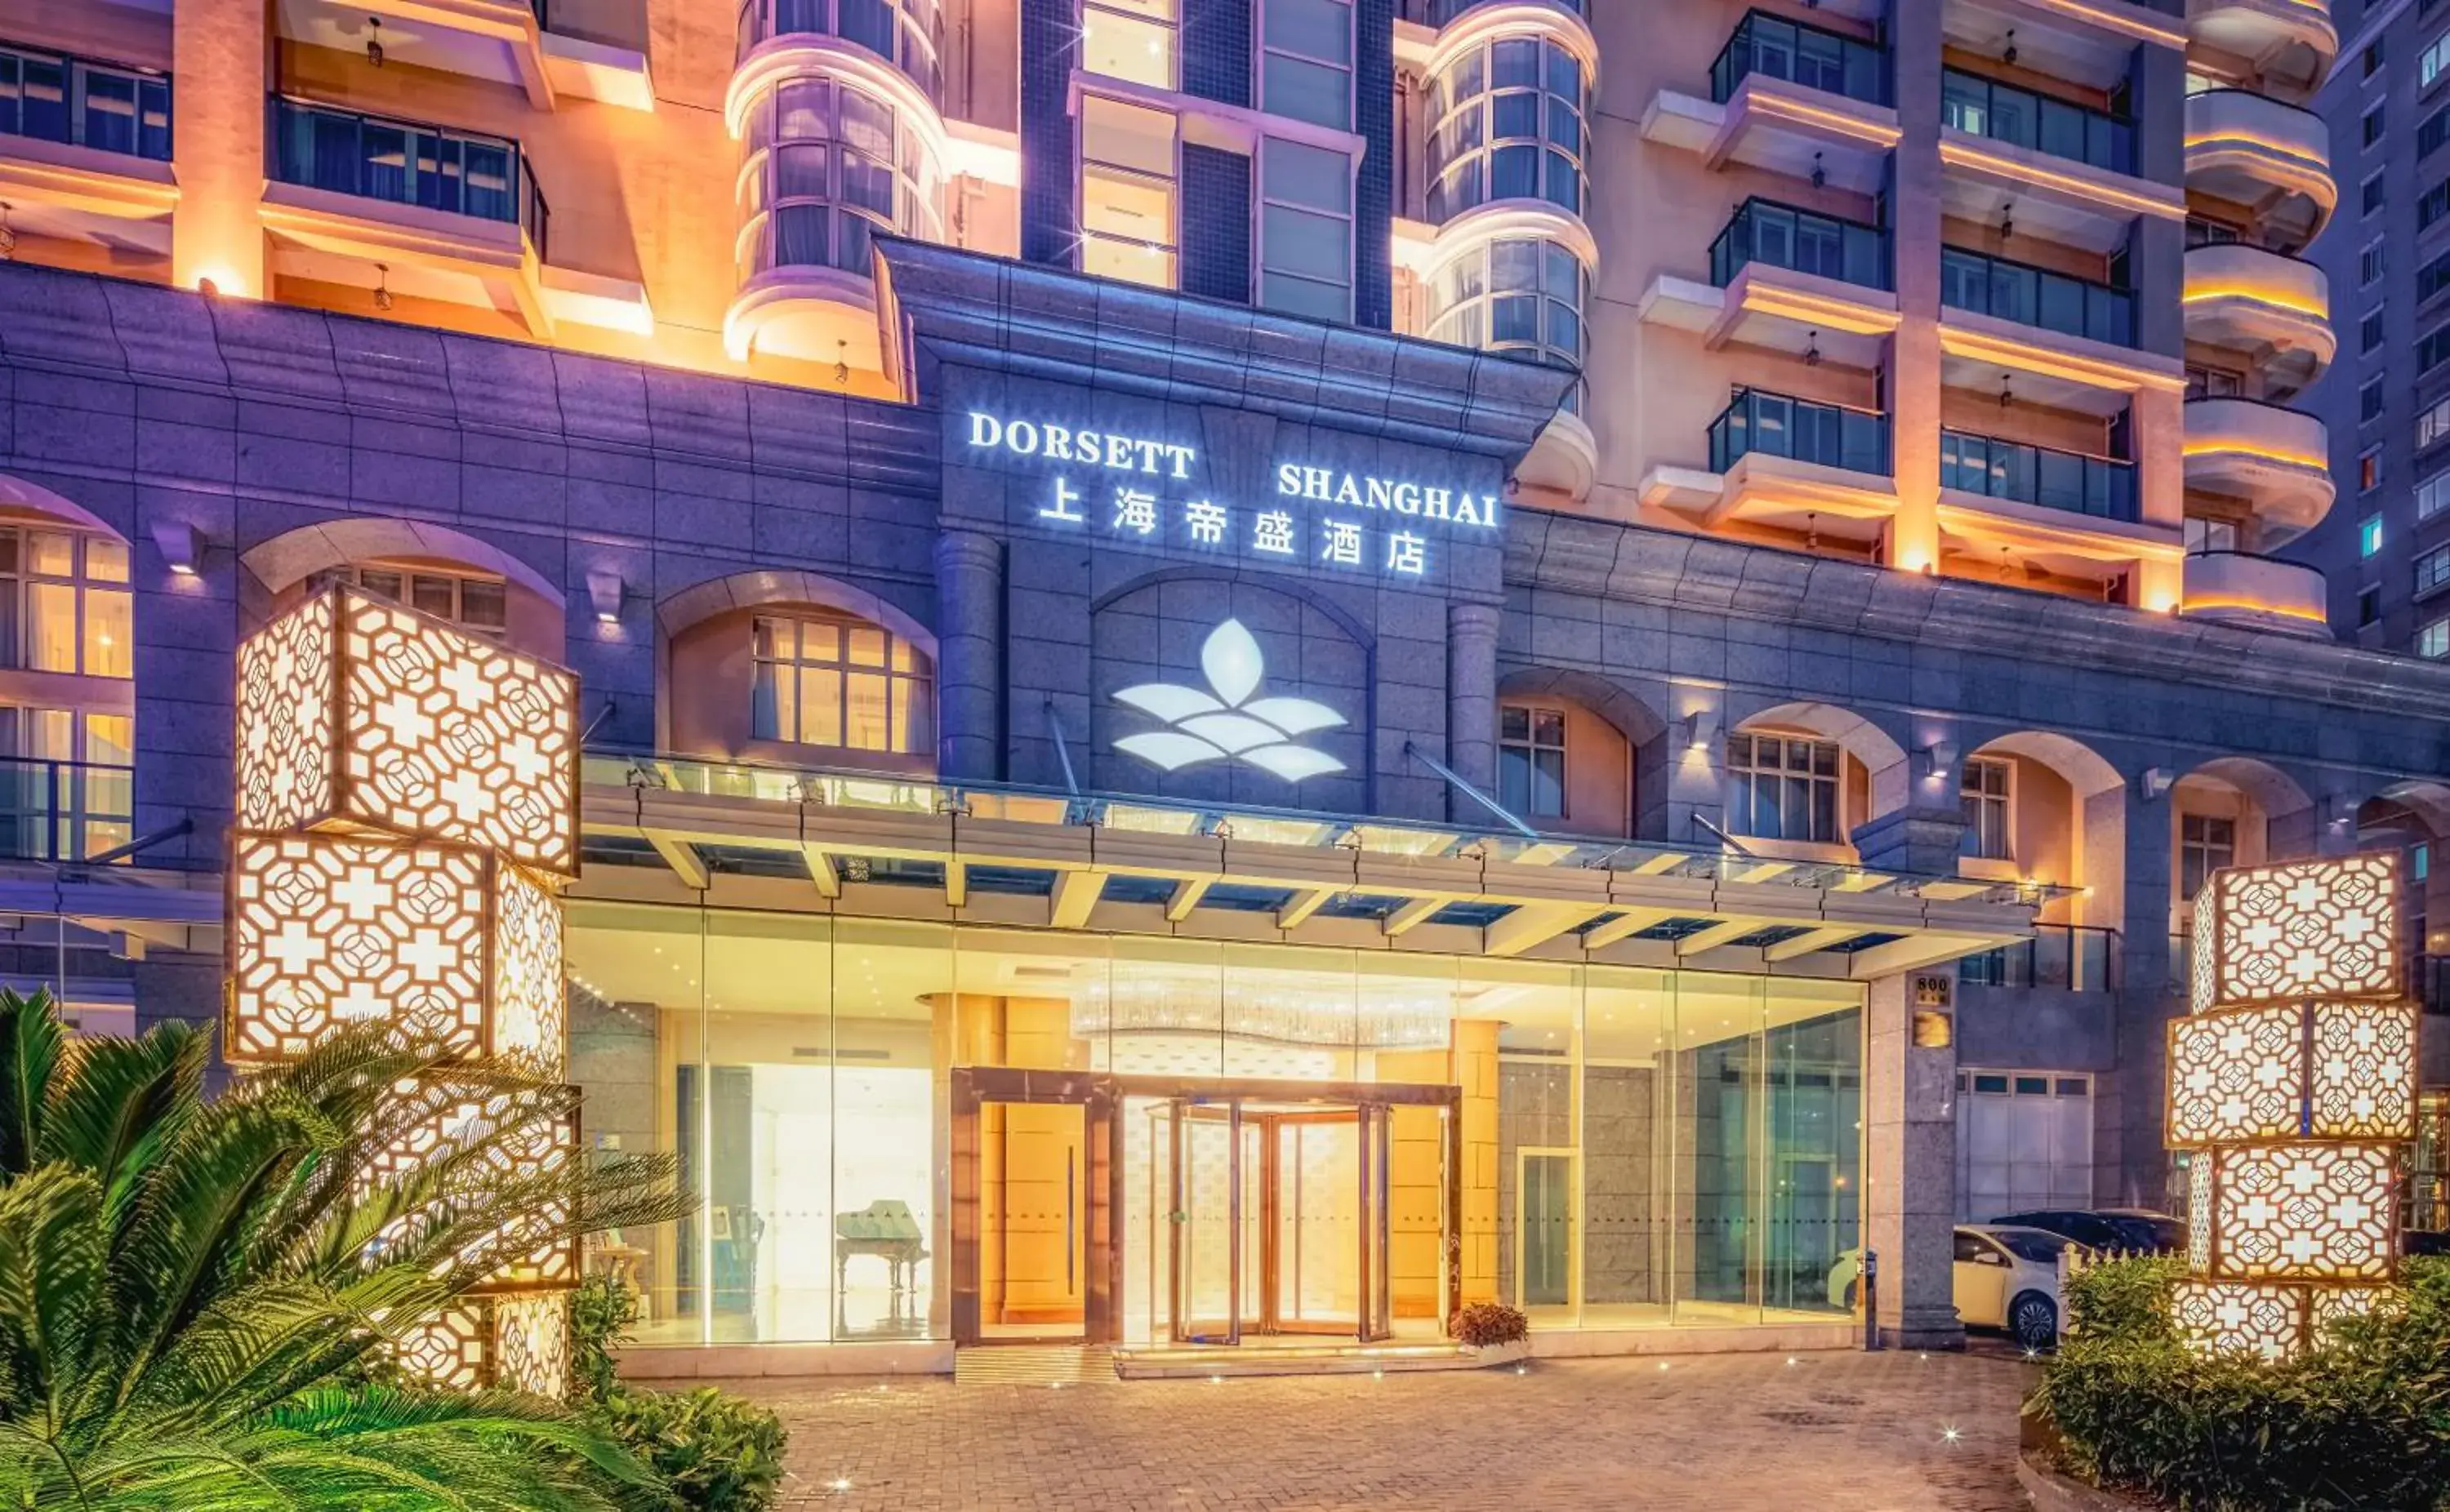 Property building, Facade/Entrance in Dorsett Shanghai